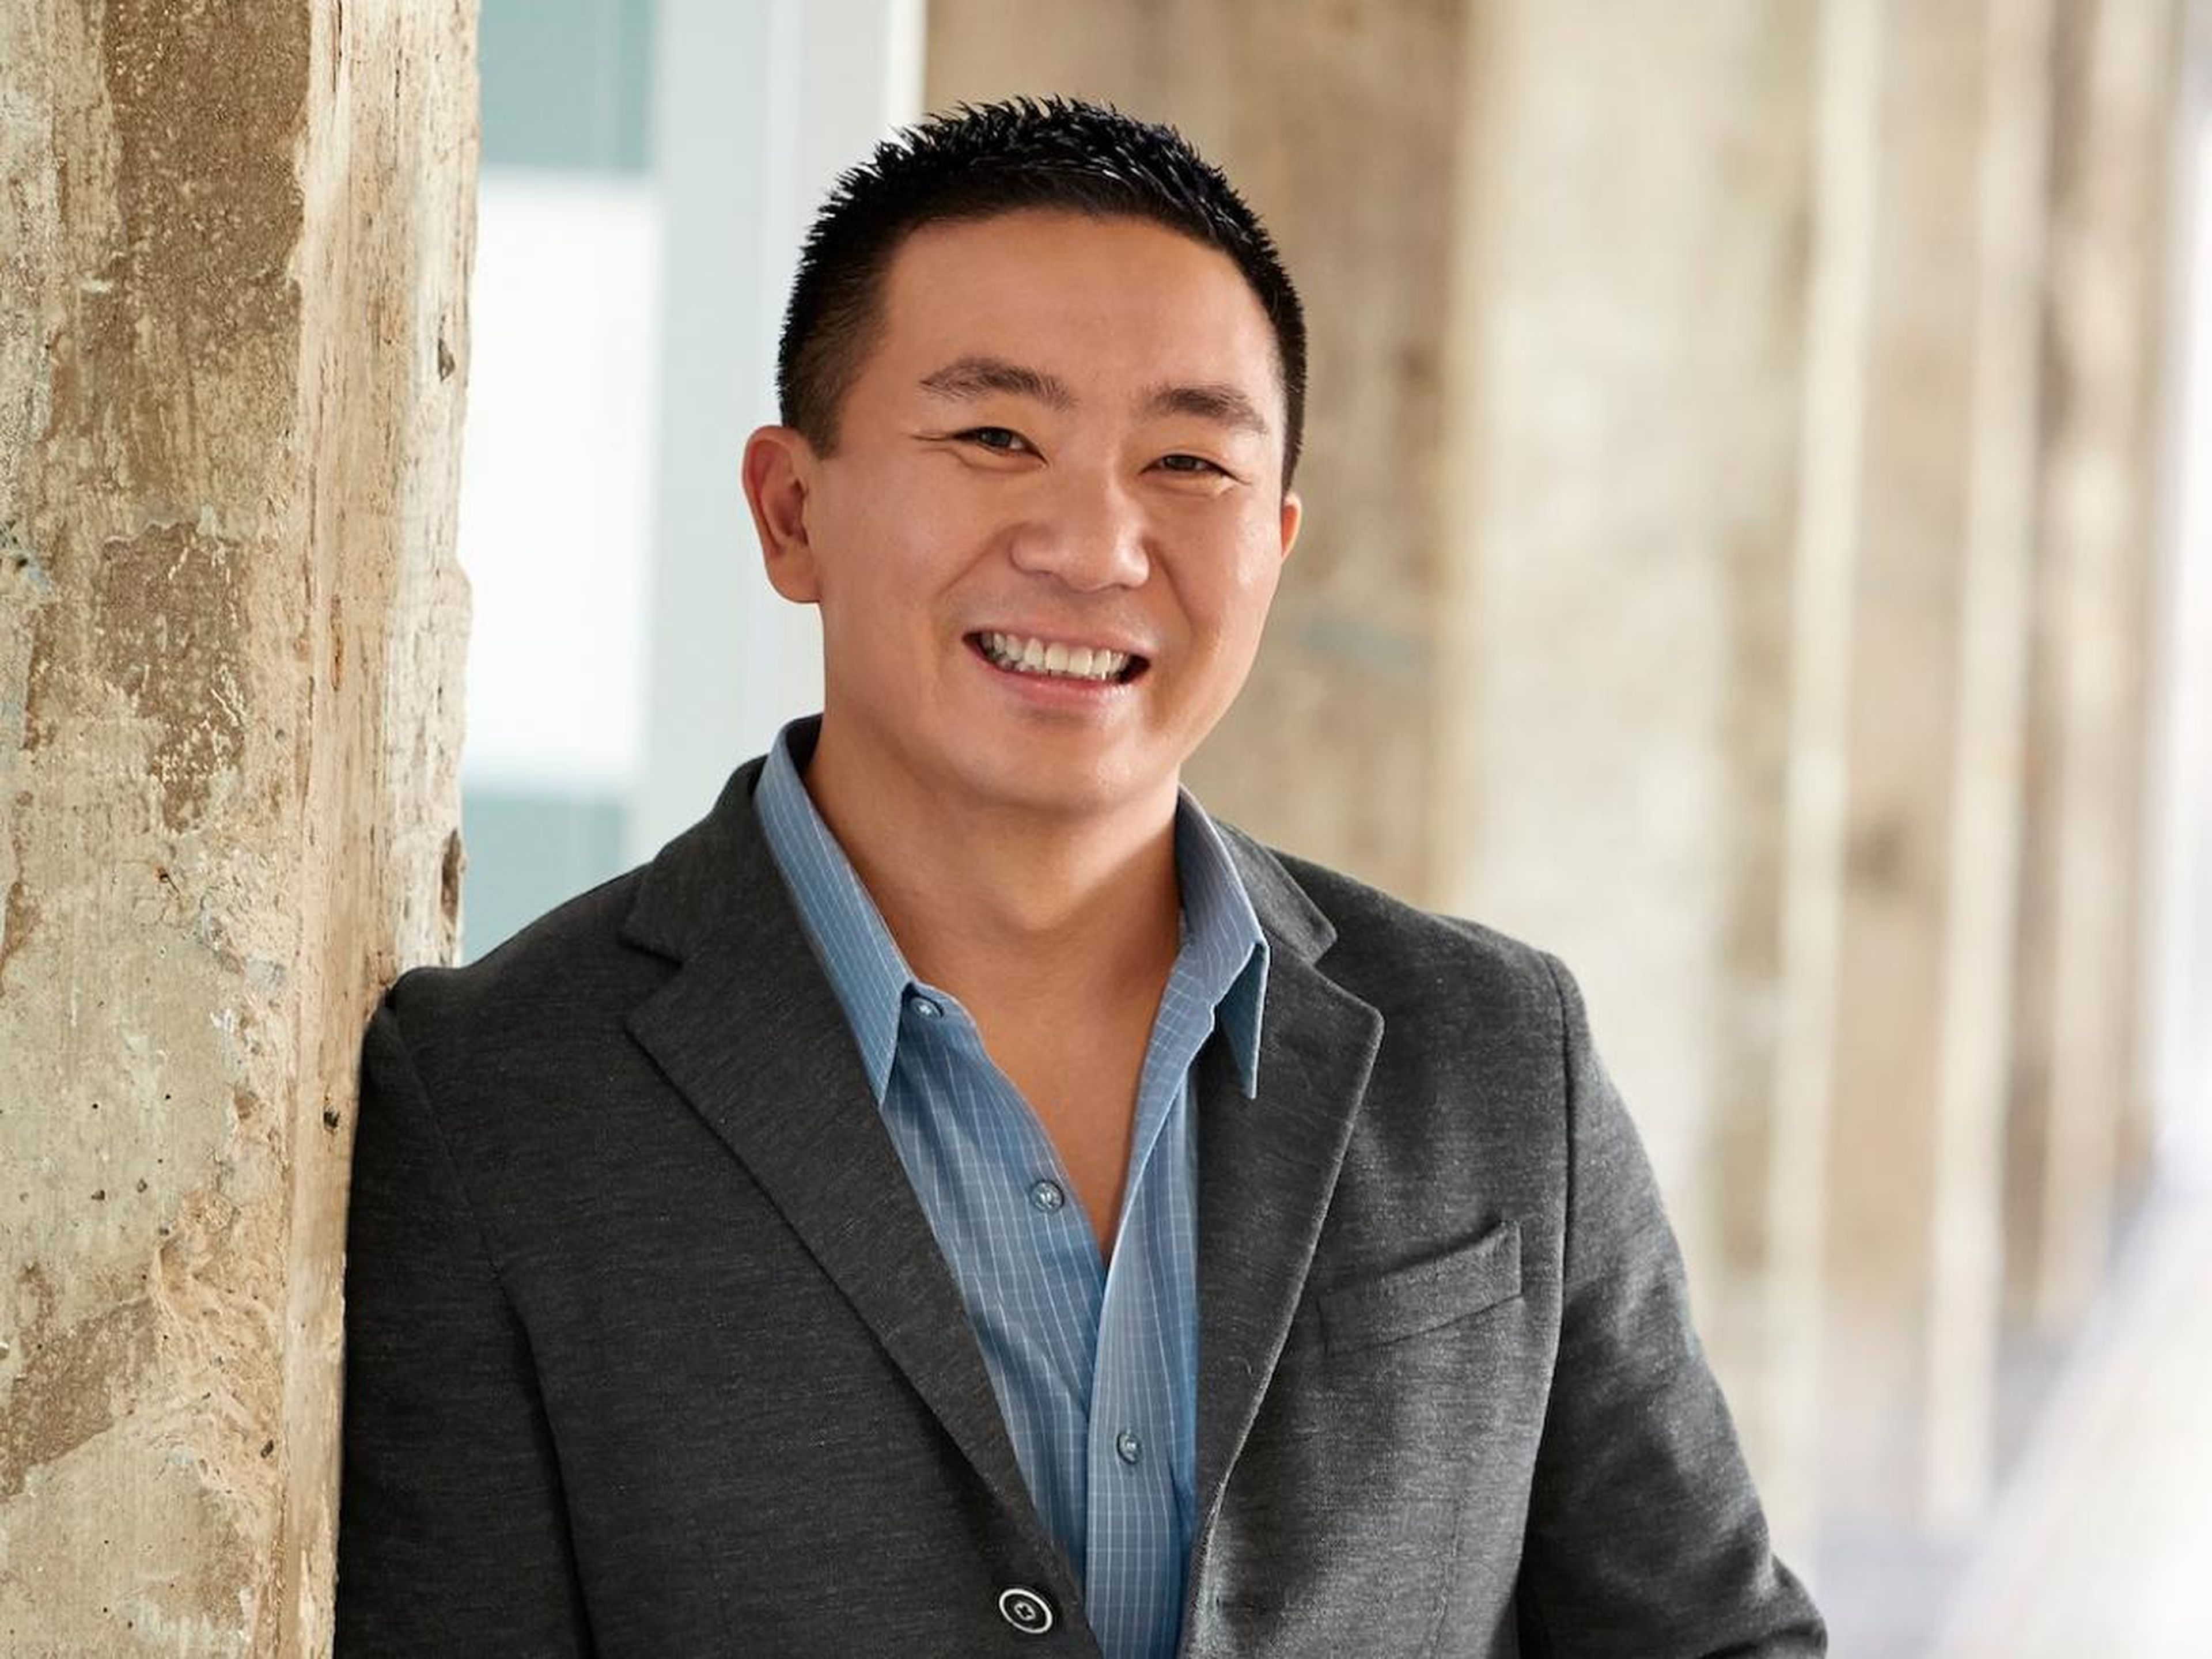 Kenneth Lin, fundador y CEO de Credit Karma, está transformando el negocio de puntuaje crediticio